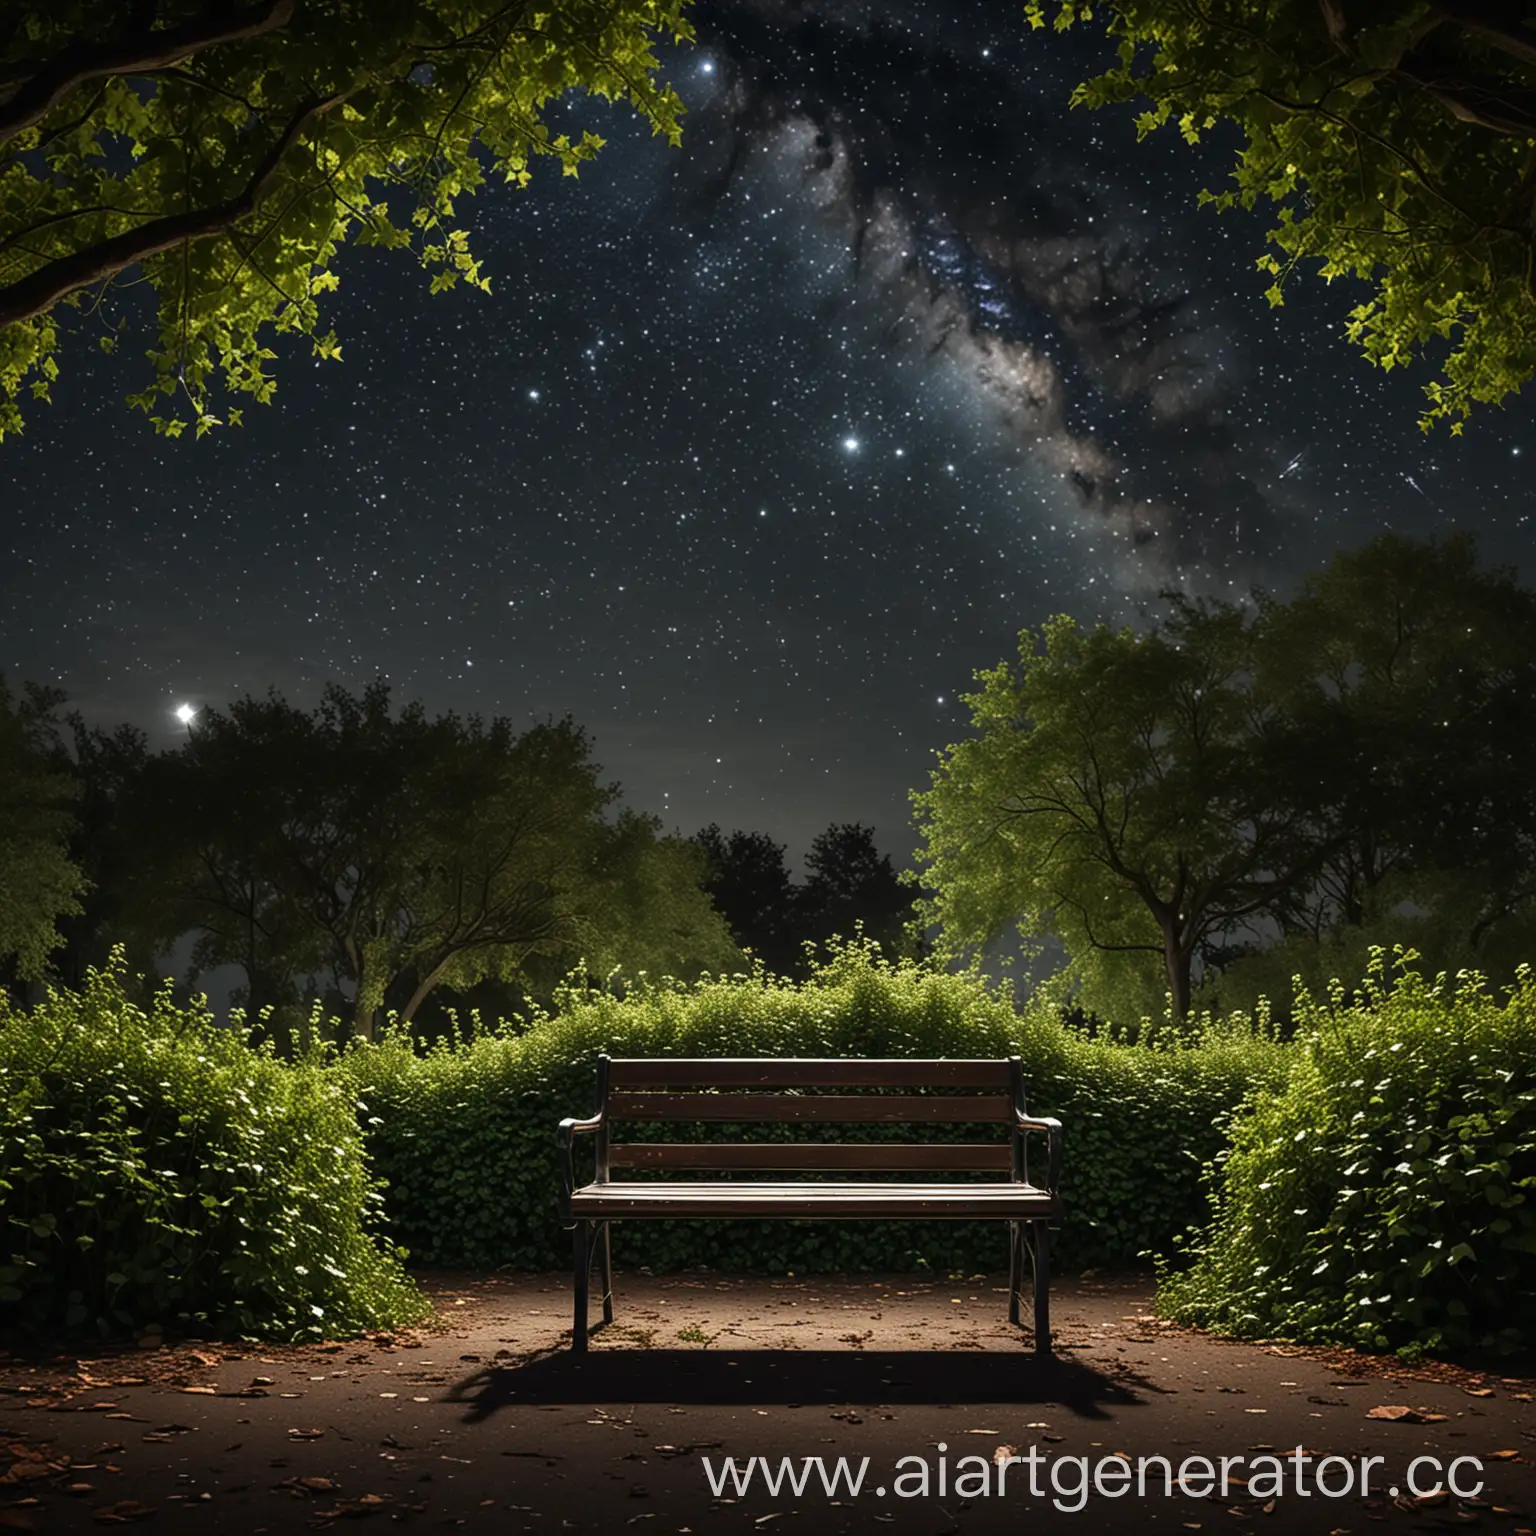 Ночное небо со звездами, пустой парк и внимание все гна пустой лавочке обивающюю лианами с размерами 1920 на 1024
